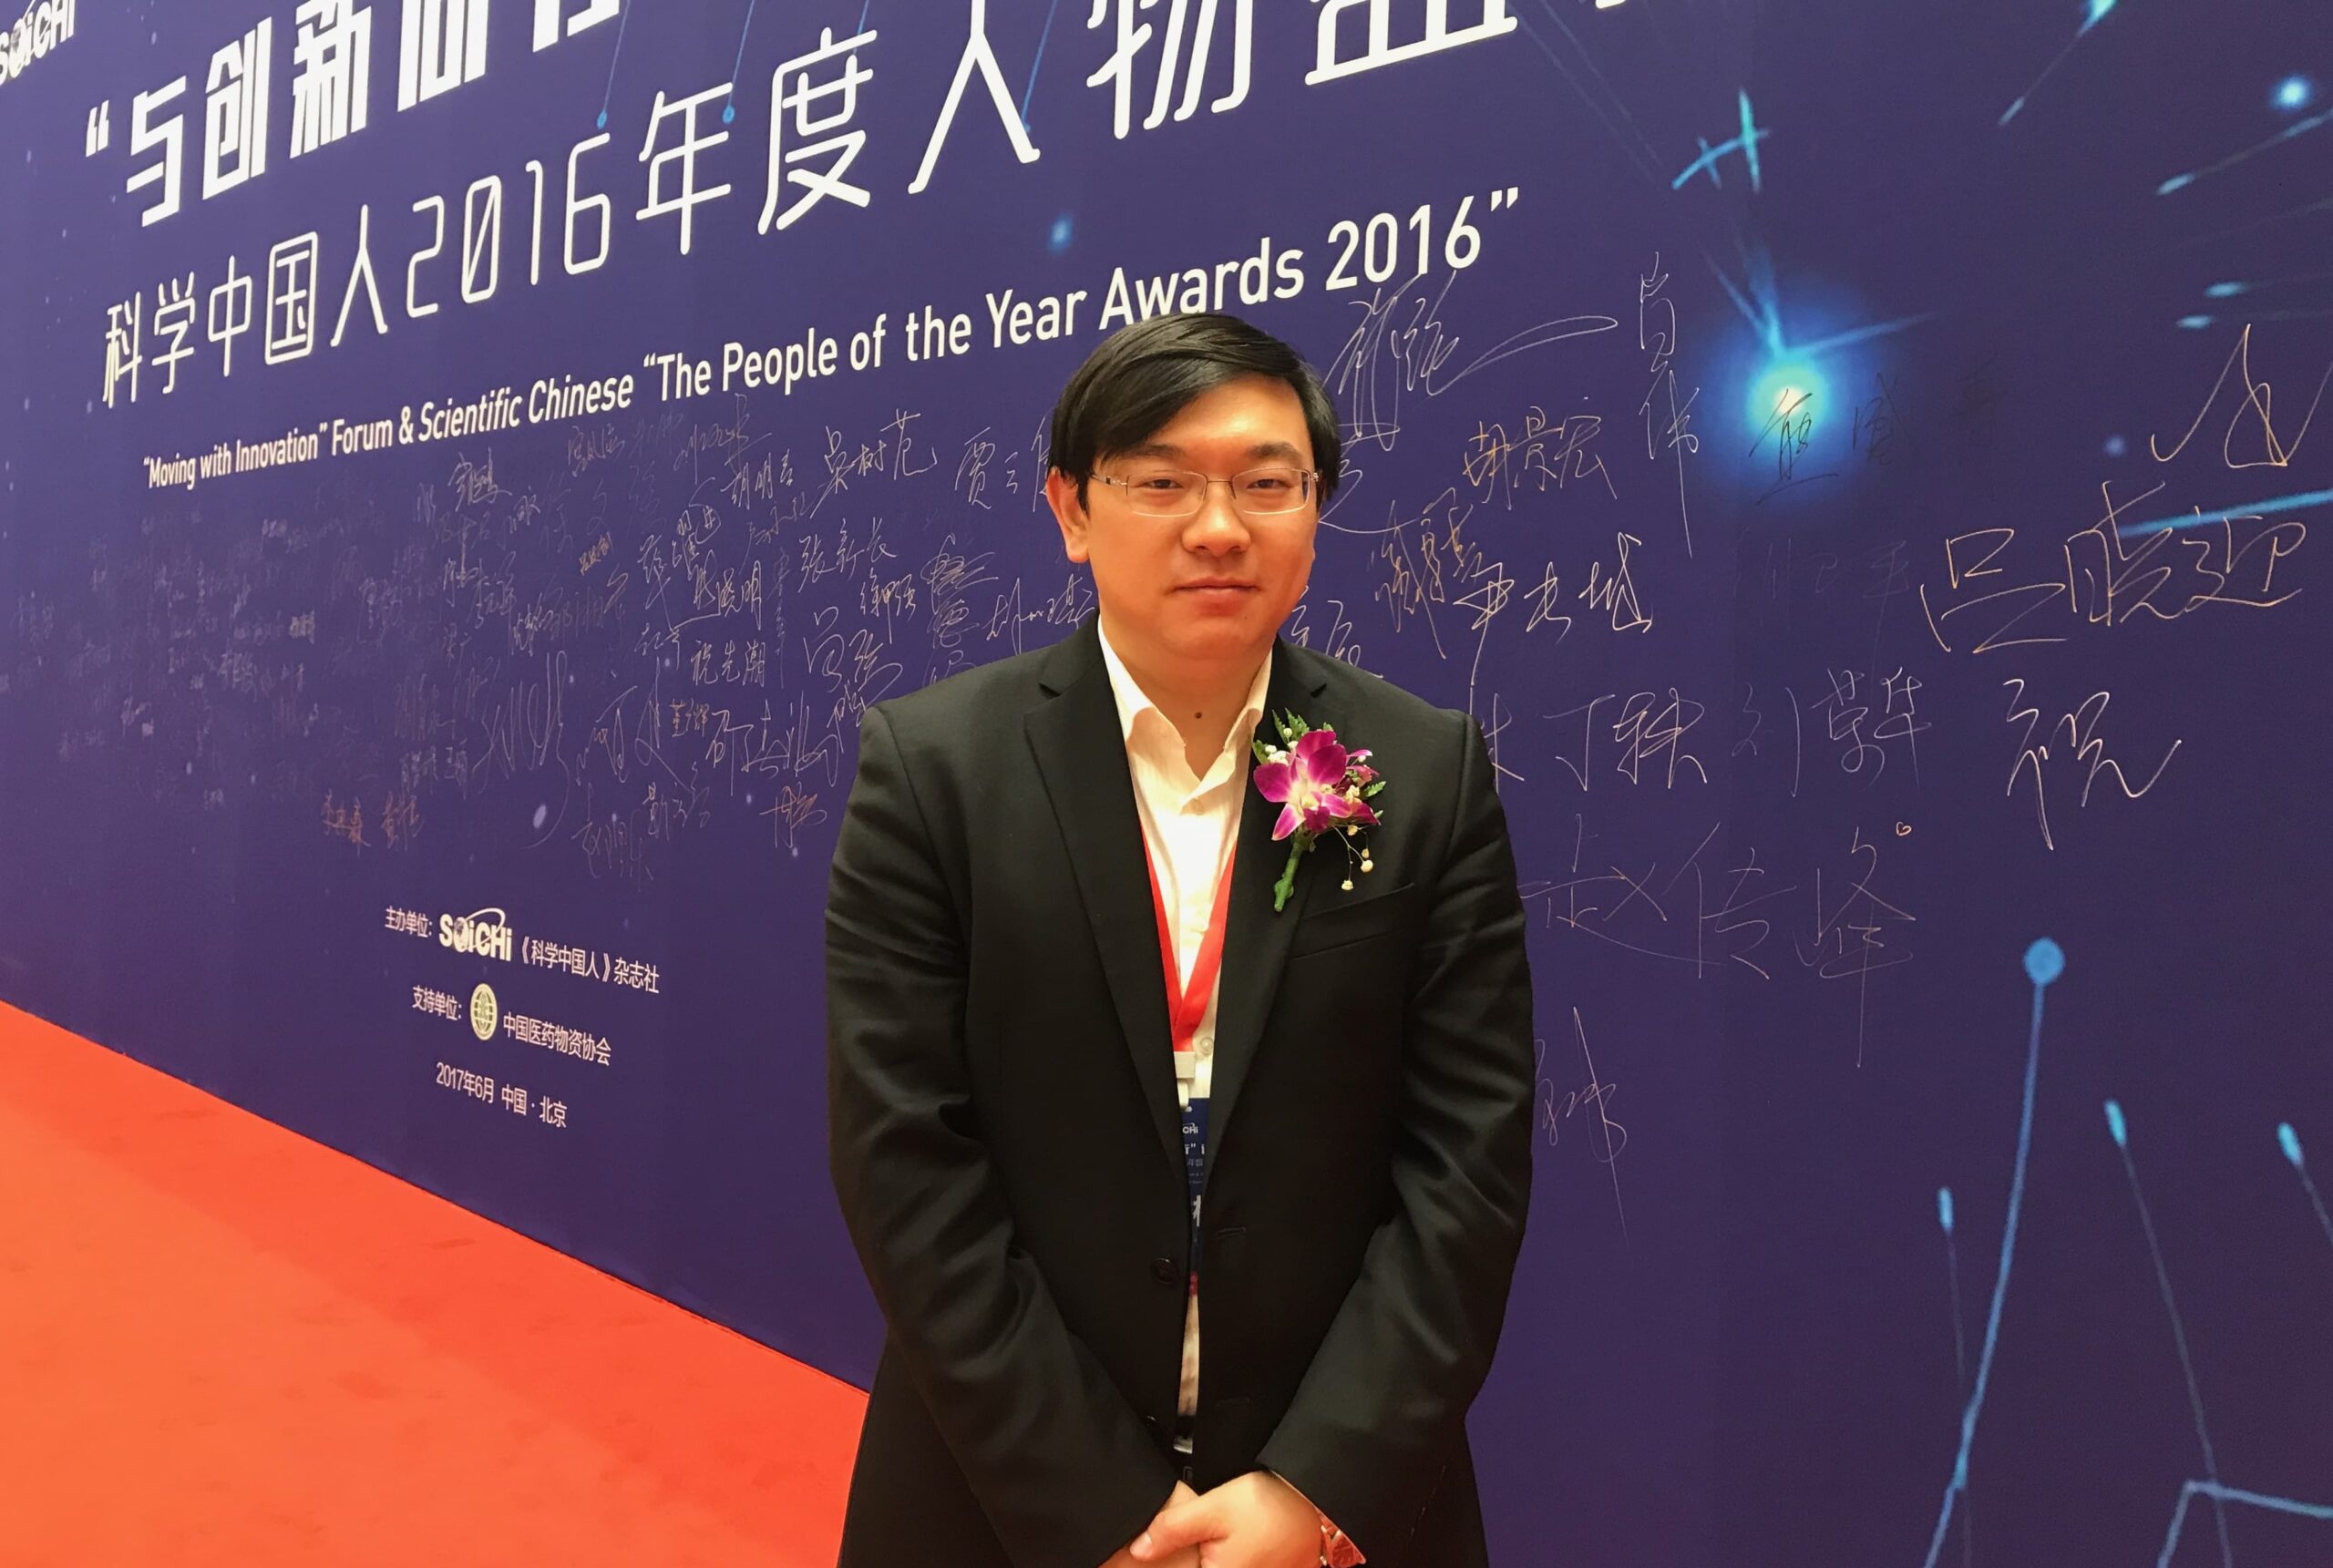 【学术成就】邓柯副教授获评“科学中国人2016年度人物”